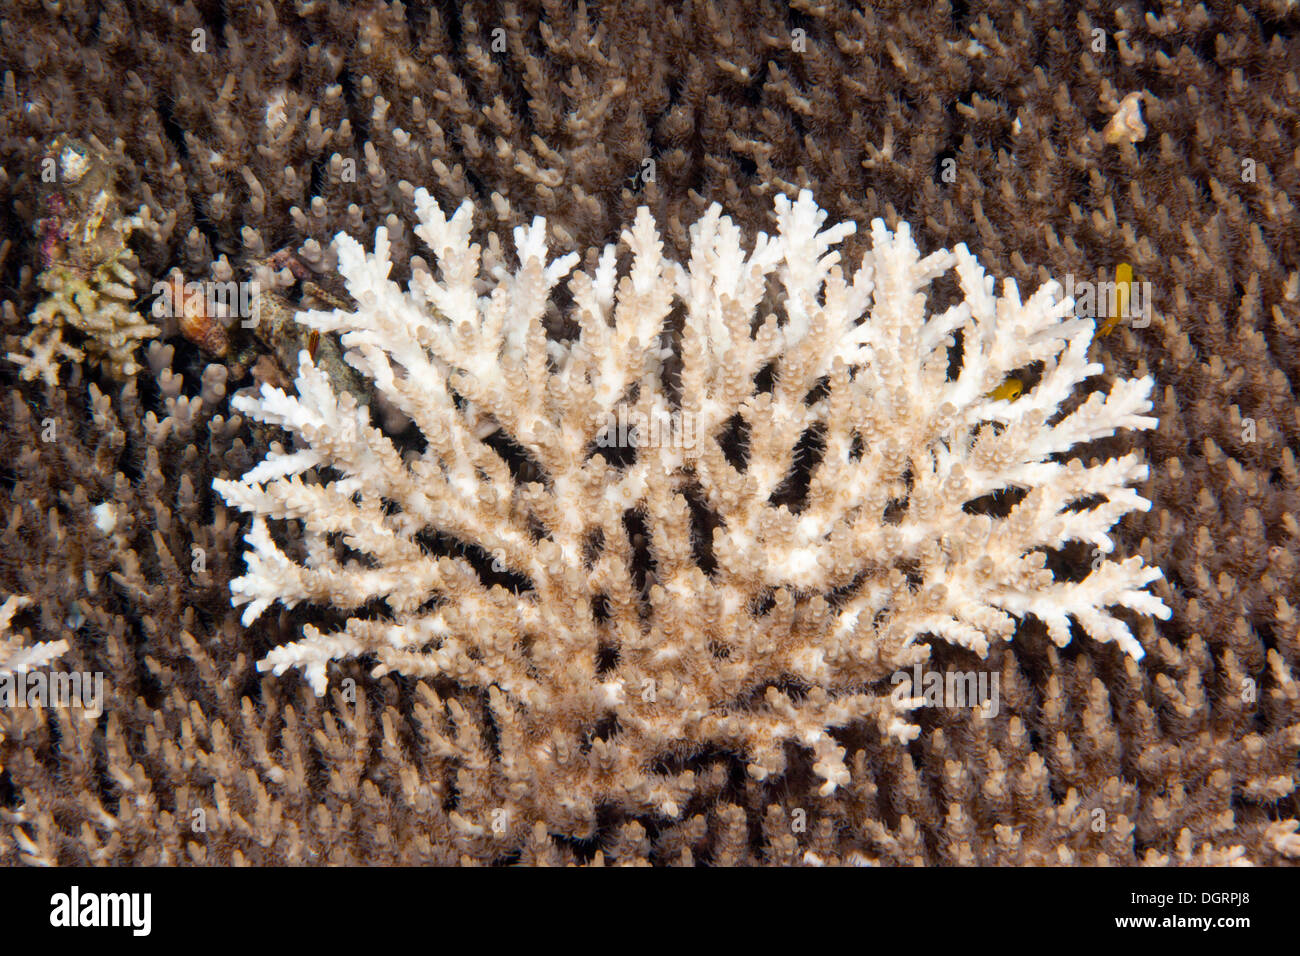 Coral muerto, de corales pétreos (Acropora), detalle de la Gran Barrera de Coral, Queensland, Australia Foto de stock